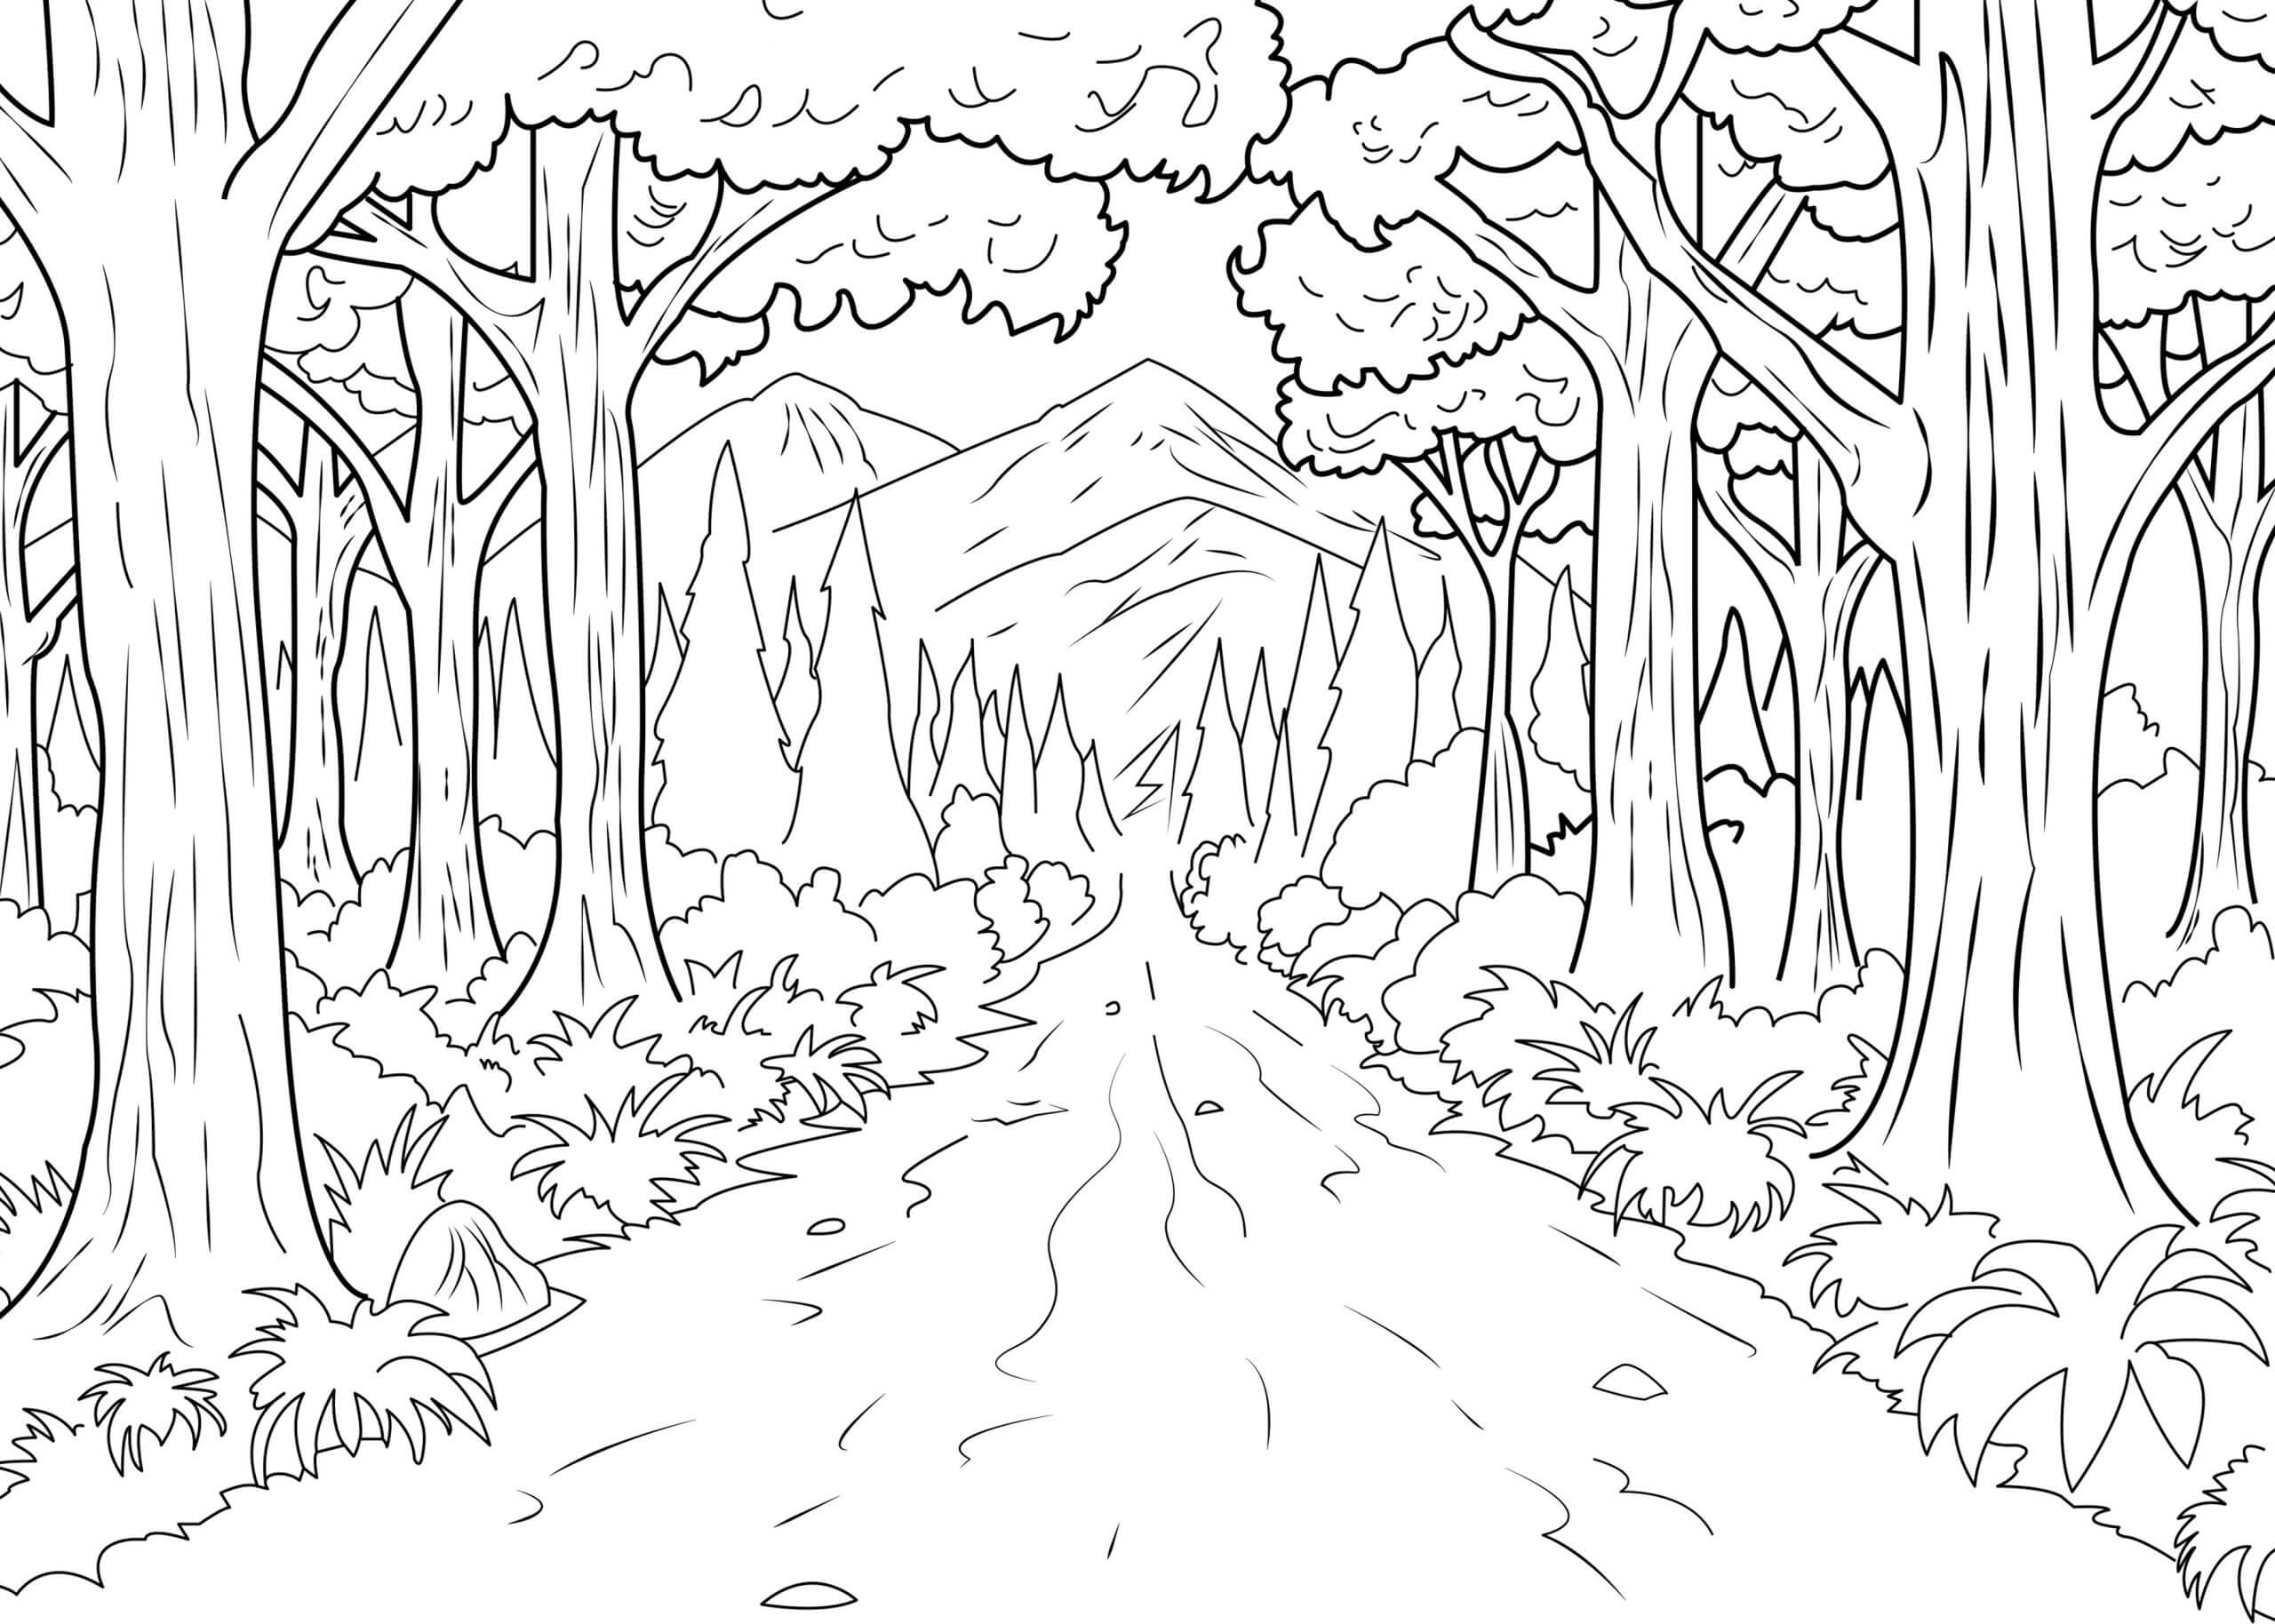 Camino Natural en el Bosque